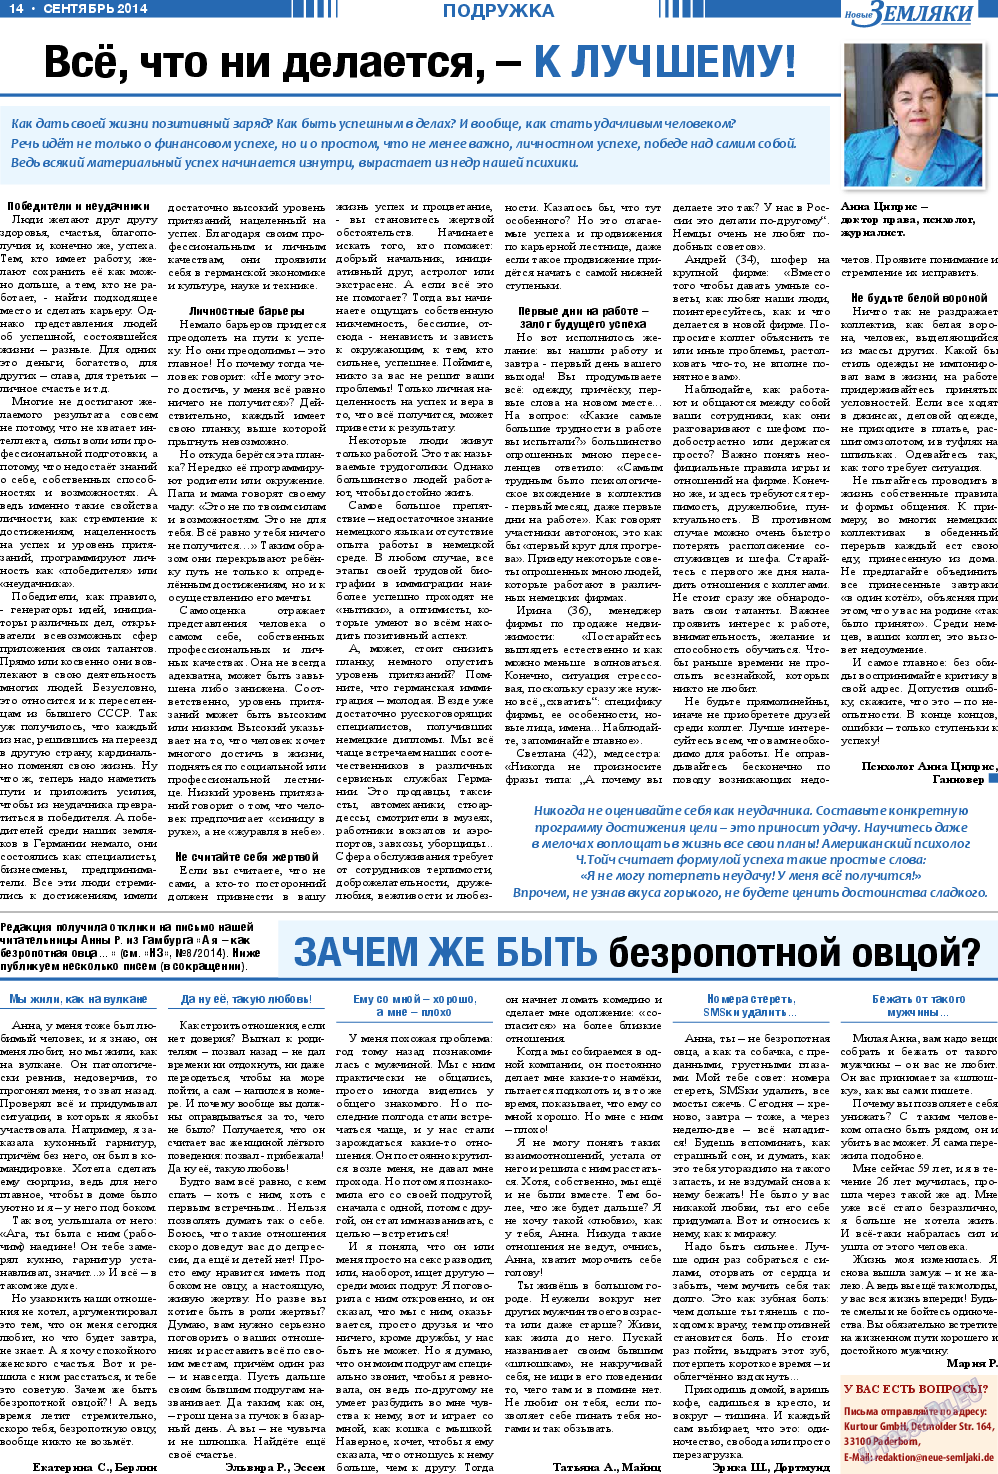 Новые Земляки, газета. 2014 №9 стр.14